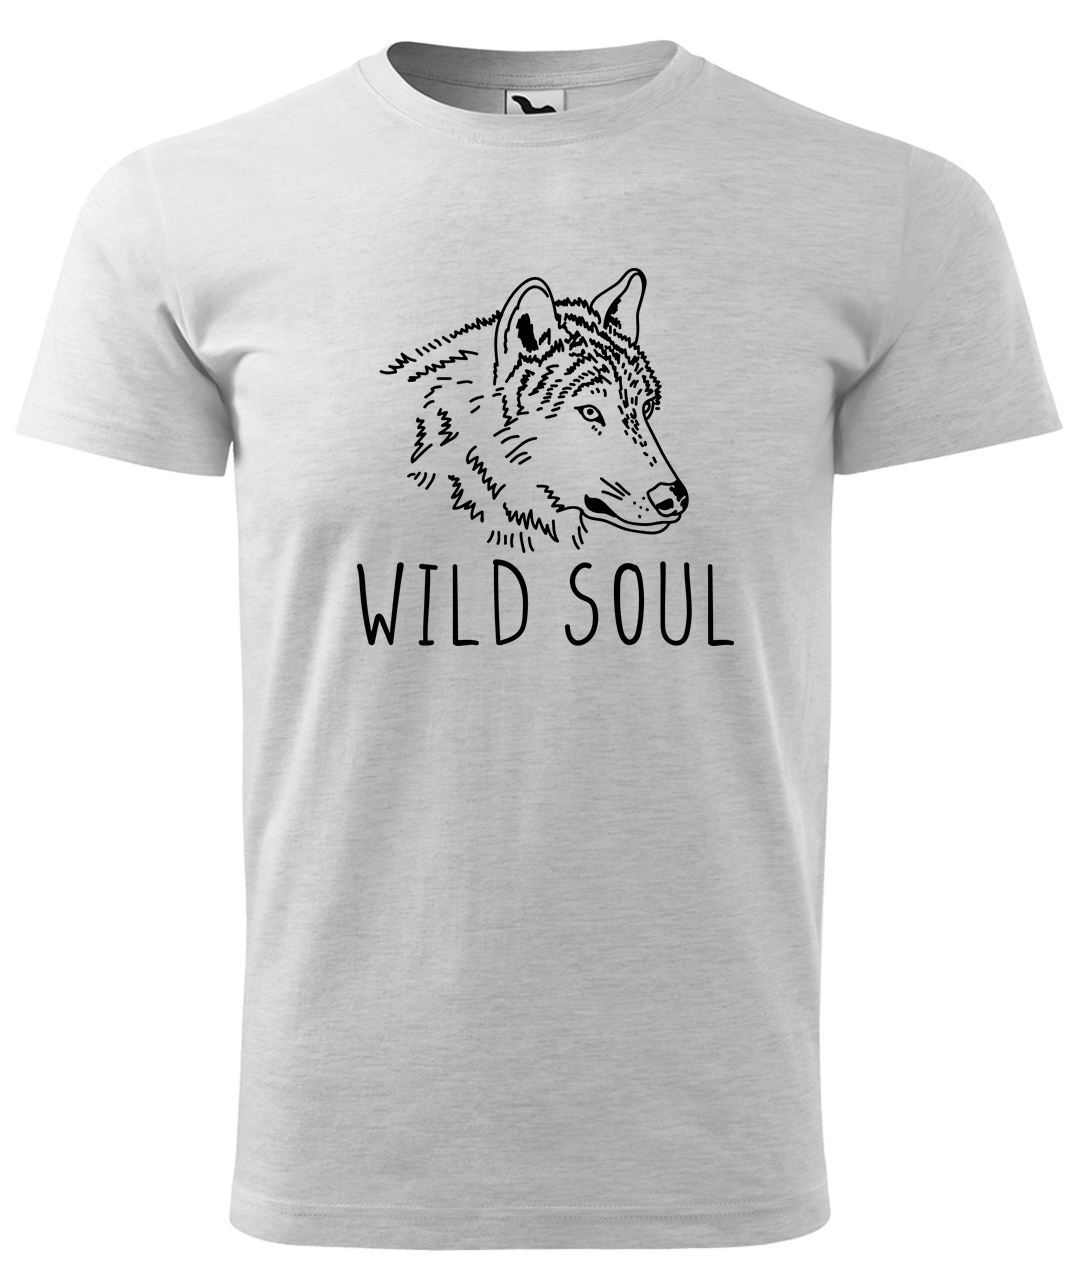 Dětské tričko s vlkem - Wild soul Velikost: 4 roky / 110 cm, Barva: Světle šedý melír (03), Délka rukávu: Krátký rukáv